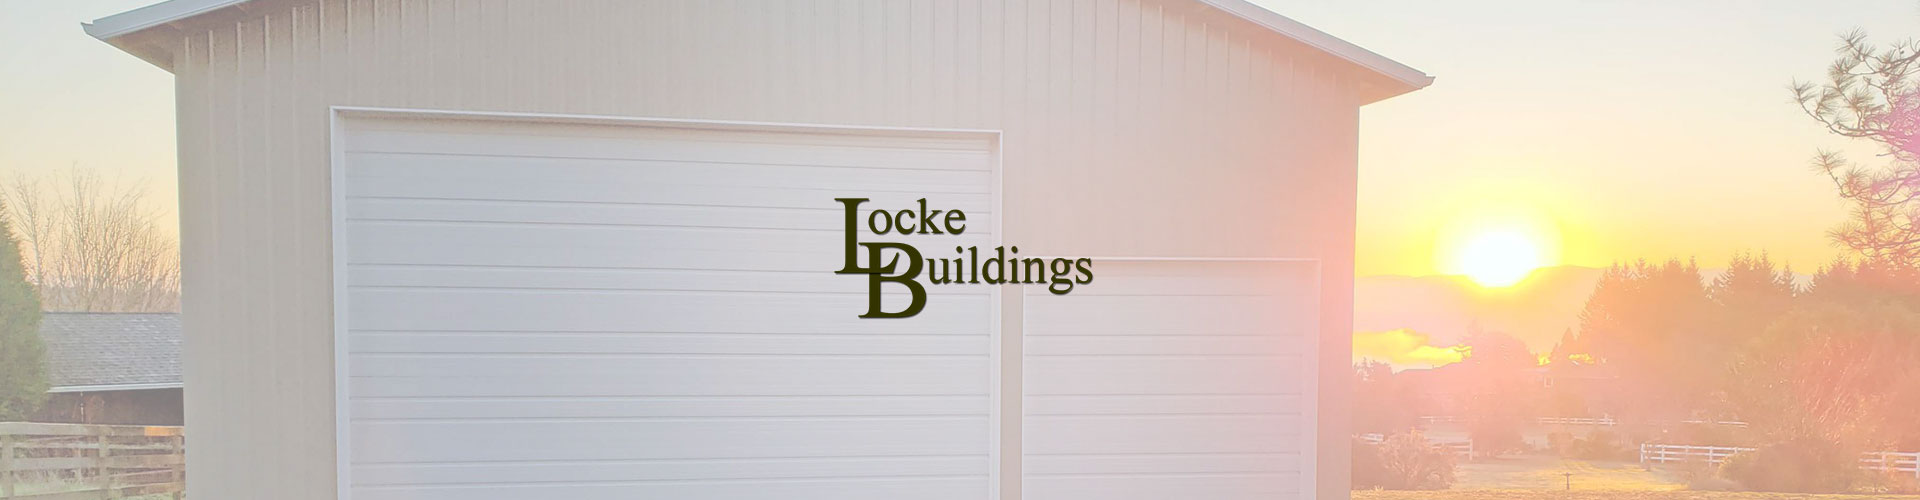 Case Study - Locke Buildings